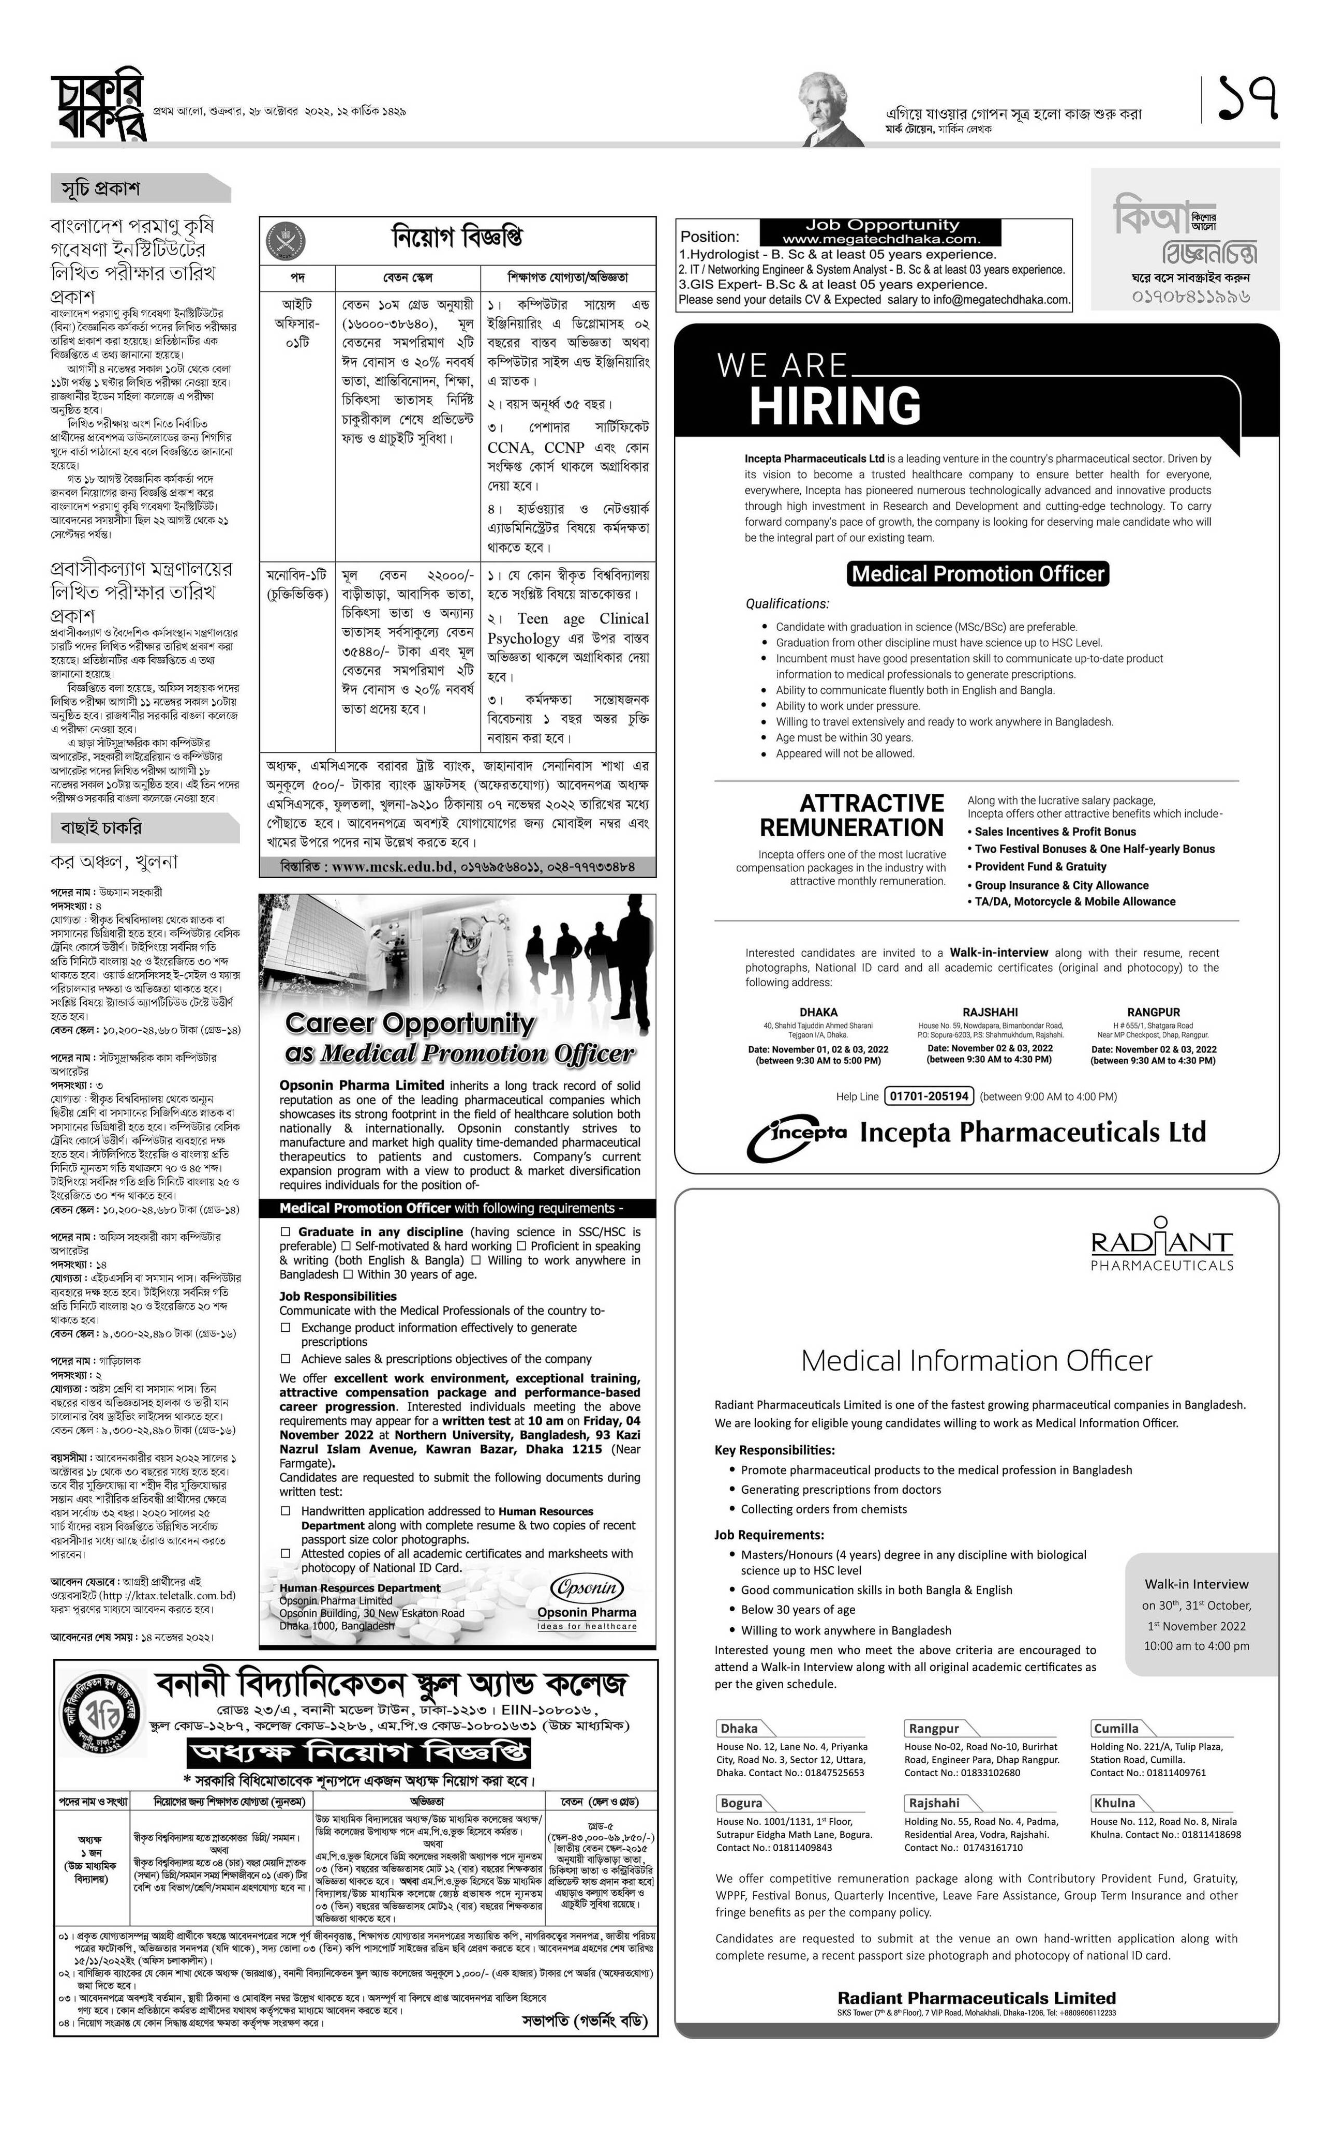 28 October 2022 Prothom Alo Chakrir Khobor - প্রথম আলো চাকরির খবর সাপ্তাহিক চাকরি বাকরি পত্রিকা ২৮ অক্টোবর ২০২২ - প্রথম আলো চাকরির খবর পত্রিকা ২৮/১০/২০২২ - প্রথম আলো পত্রিকা আজকের খবর - Prothom Alo jobs 2022 - প্রথম আলো চাকরির খবর 2022 - prothom alo chakri bakri 2022 - চাকরি বাকরি ২০২২ - সাপ্তাহিক চাকরি বাকরি